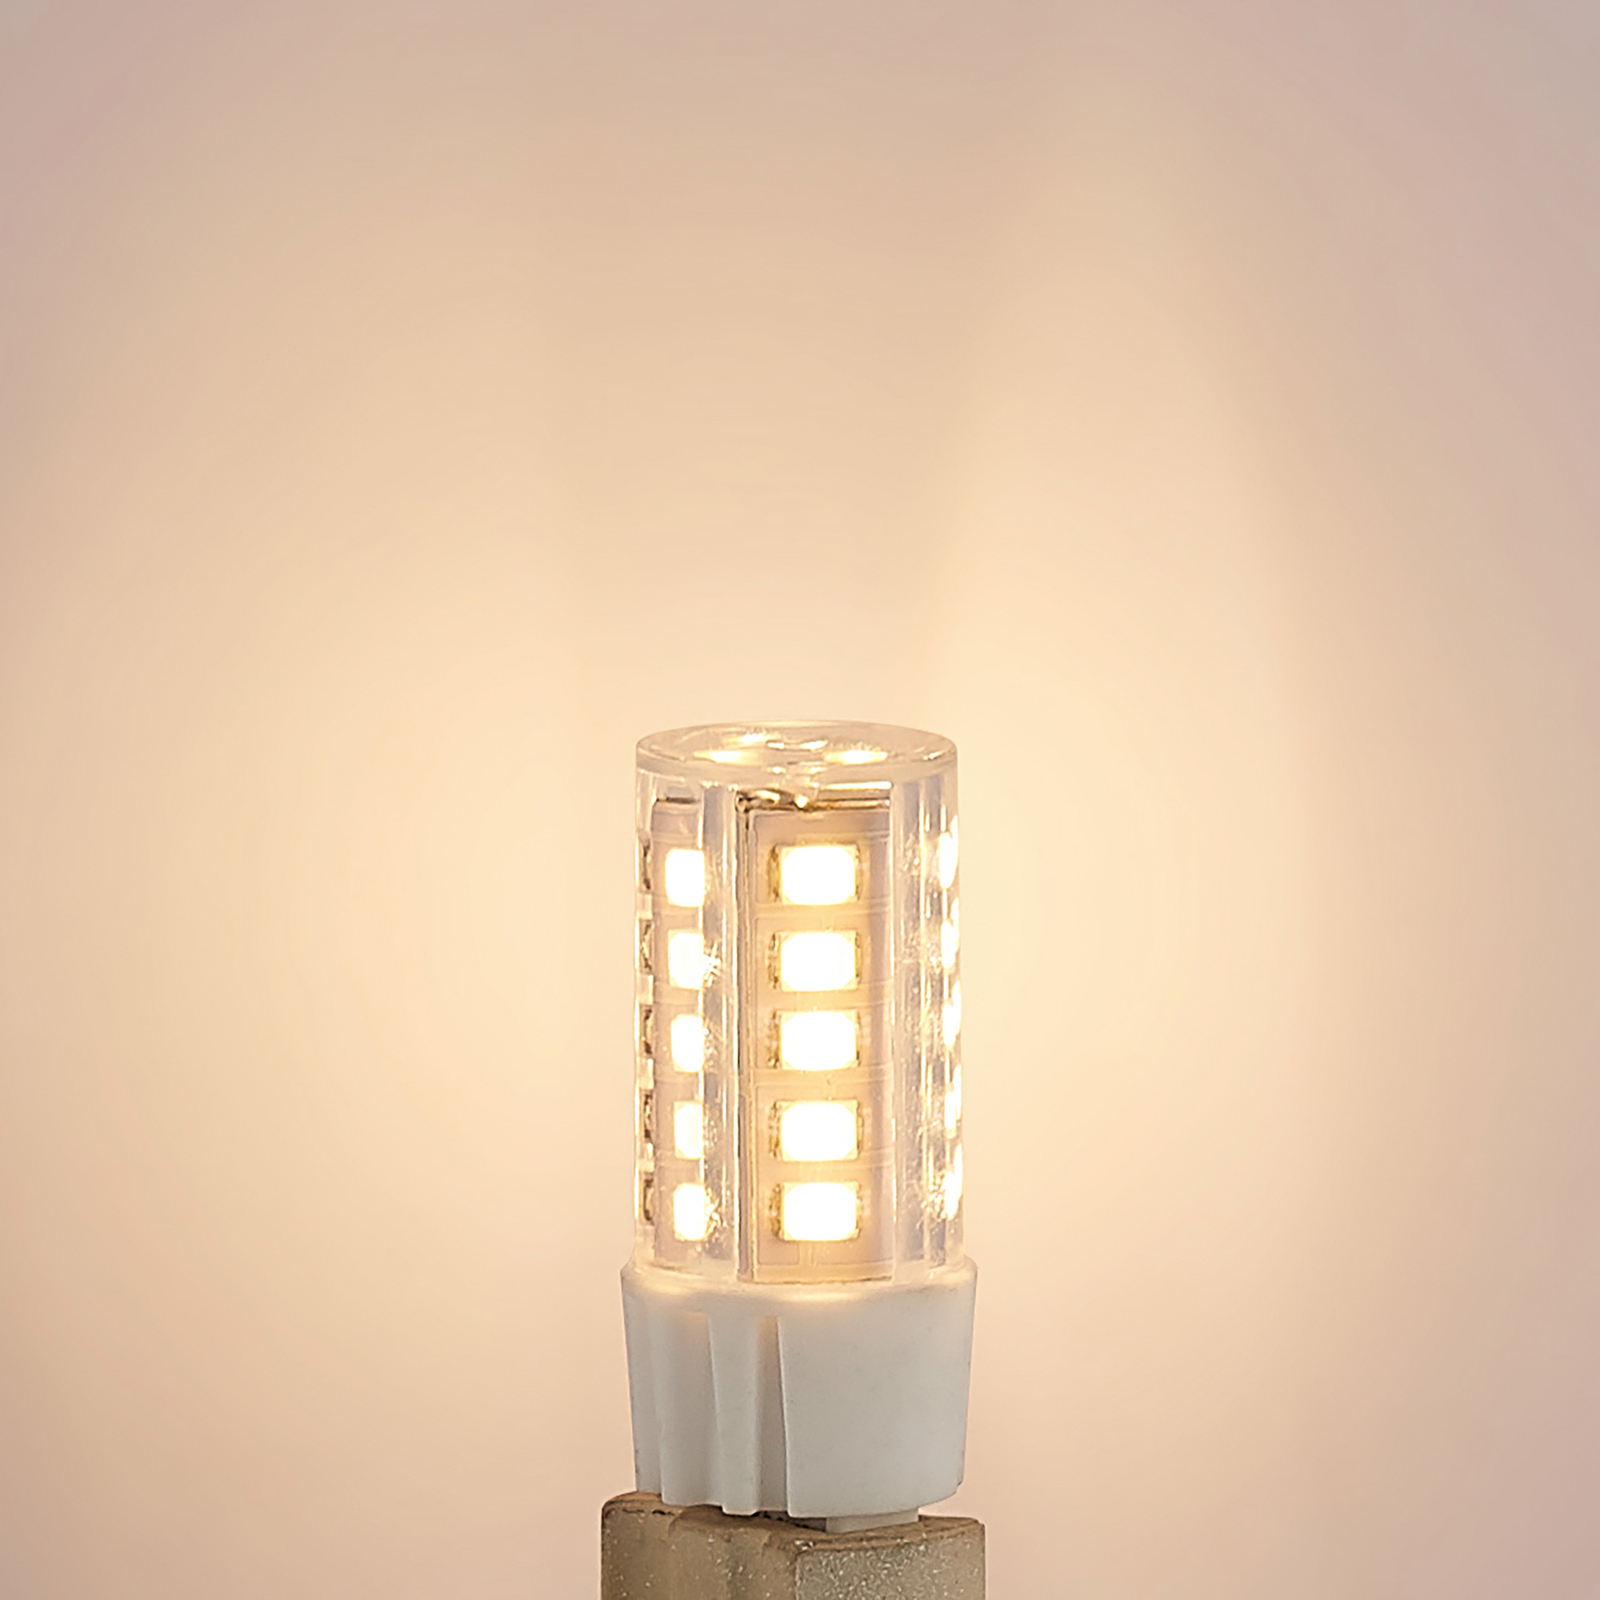 Arcchio bi-pin LED bulb G9 3.5 W 2,700 K